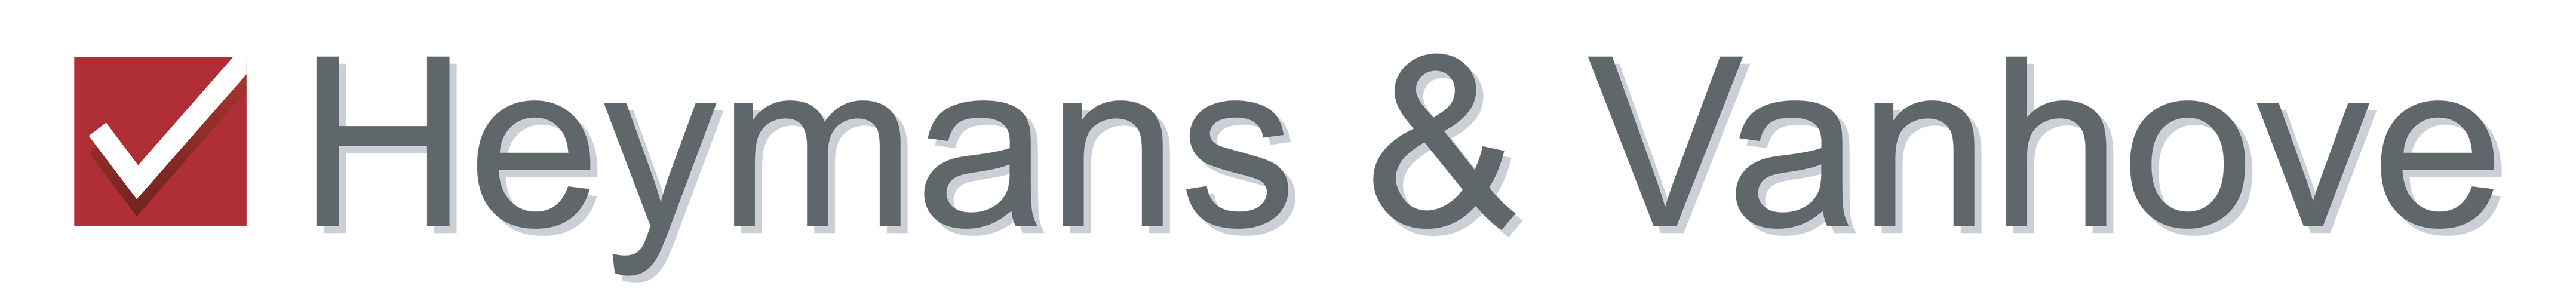 Logo Heymans & Vanhove